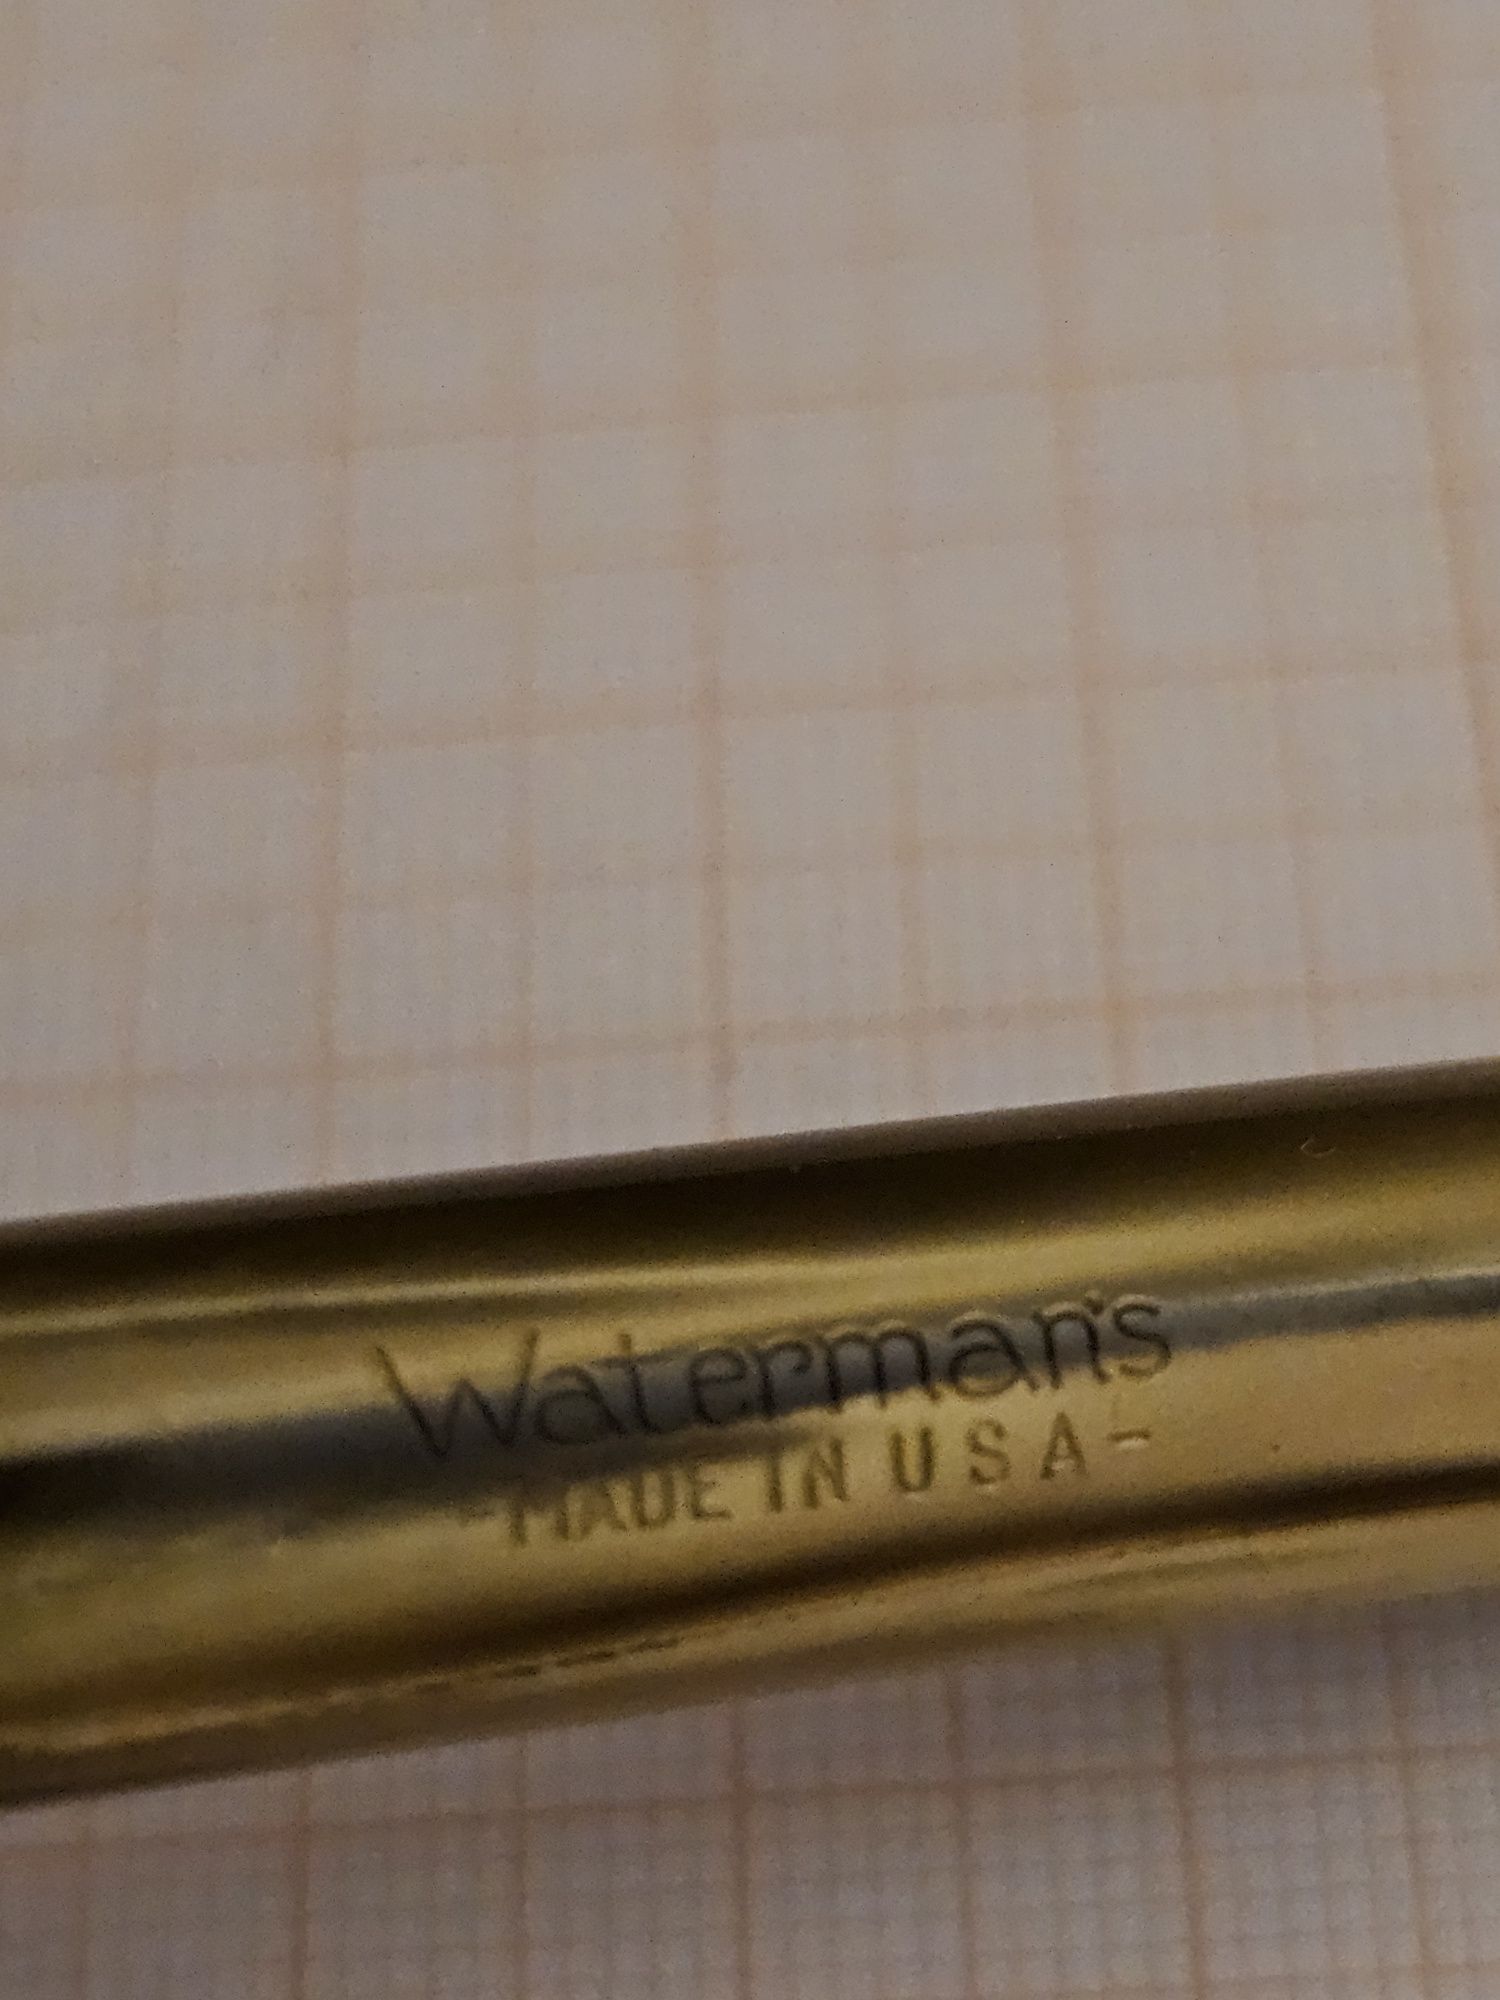 Waterman's W-2 stilou de colectie penita de aur anii 1940